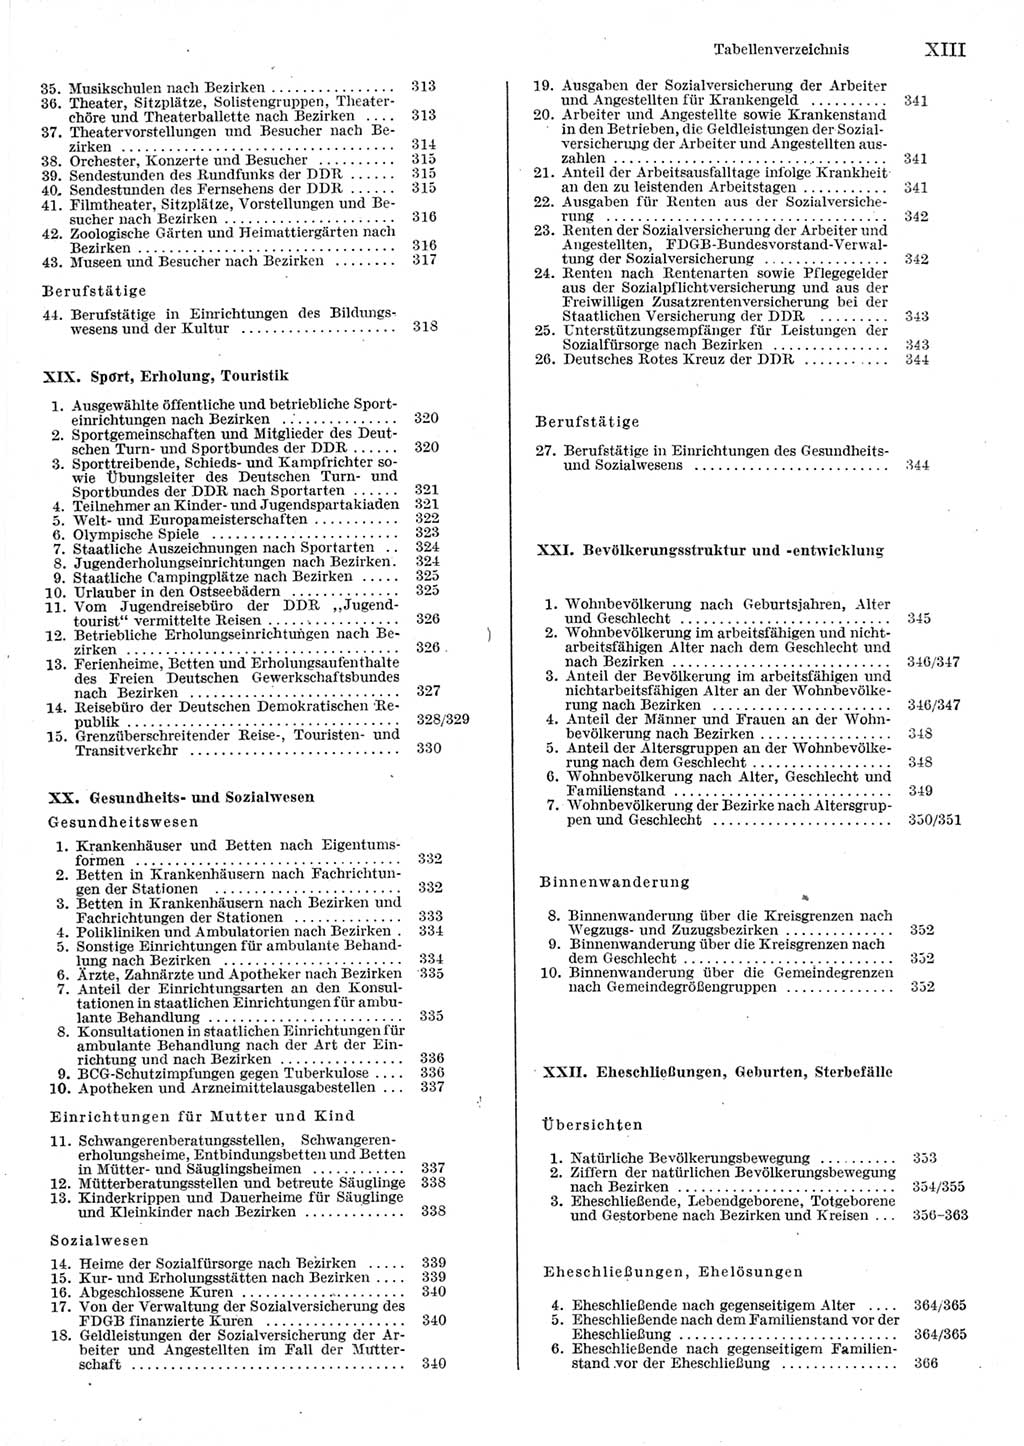 Statistisches Jahrbuch der Deutschen Demokratischen Republik (DDR) 1980, Seite 13 (Stat. Jb. DDR 1980, S. 13)